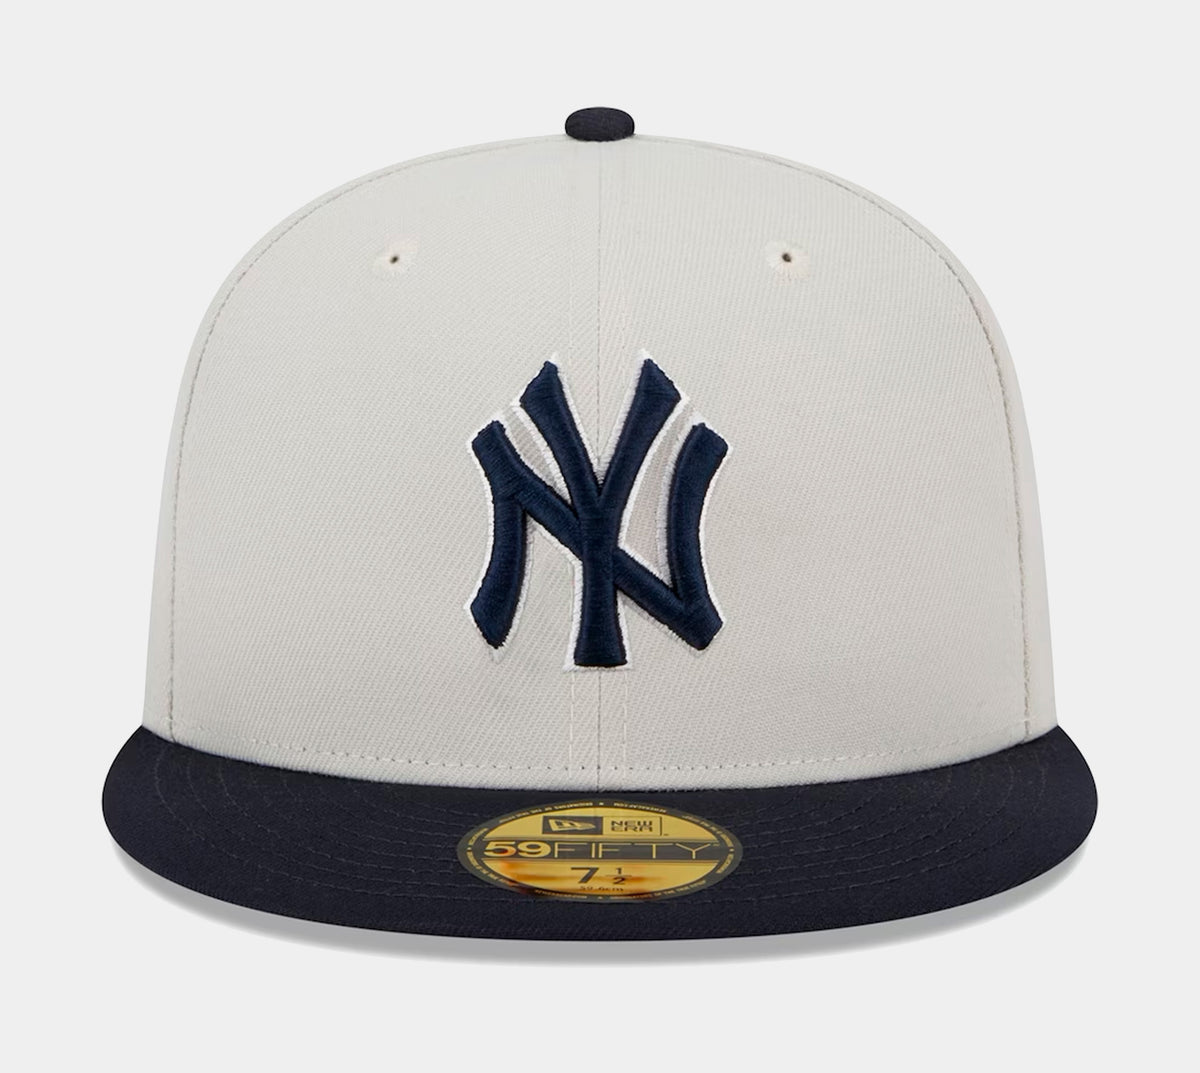 New Era NY Yankees Varsity Letter Shorts